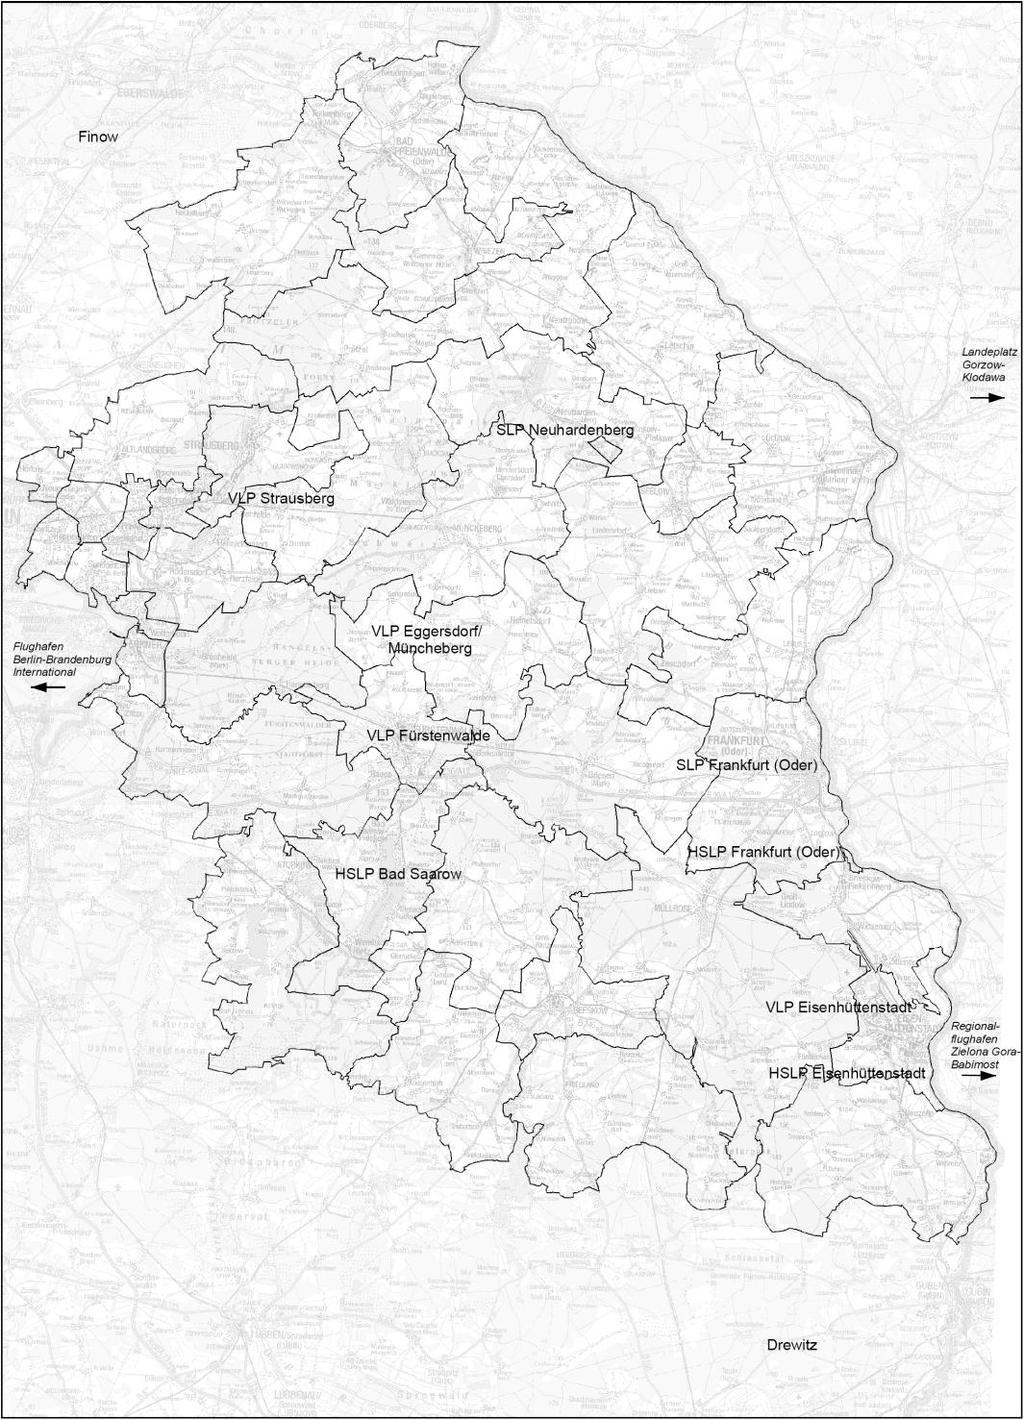 Vergleichende Analyse der Flugbewegungen an den Landeplätzen in Ostbrandenburg Regionale